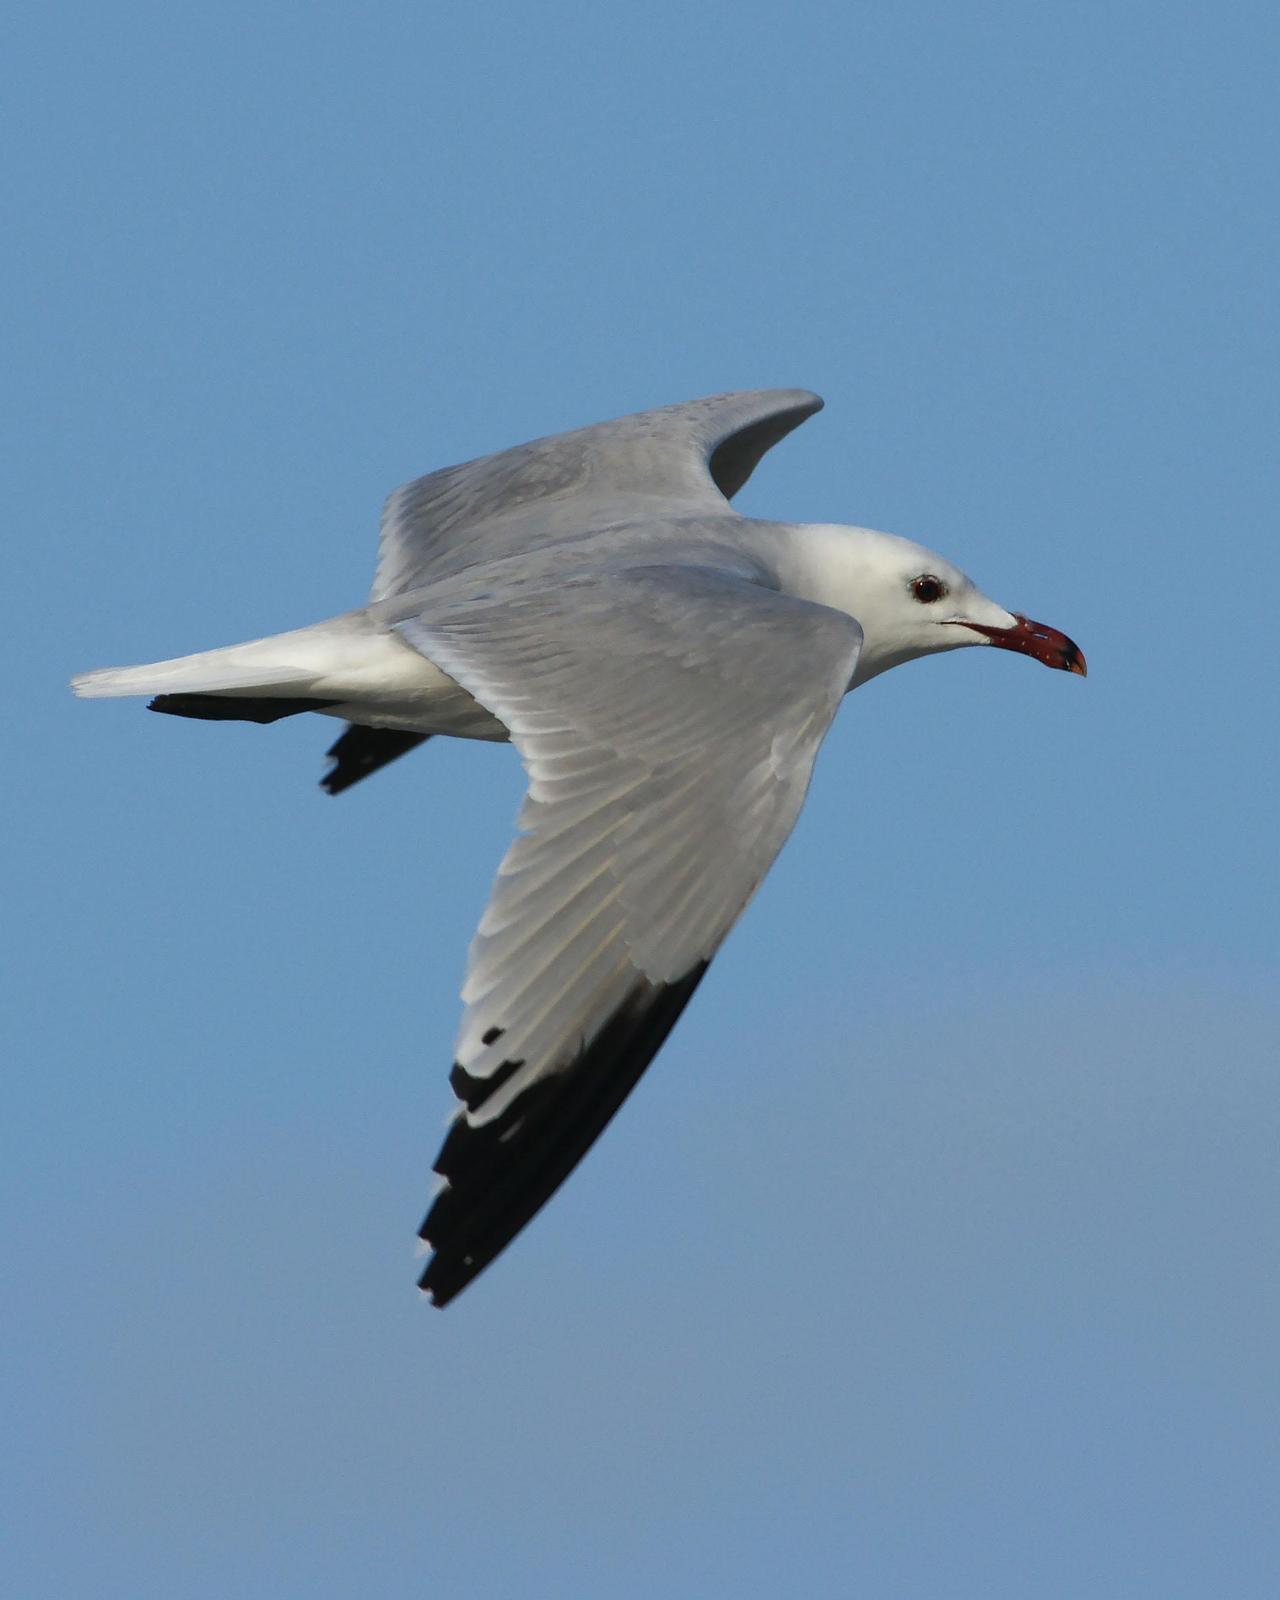 Audouin's Gull Photo by Steve Percival